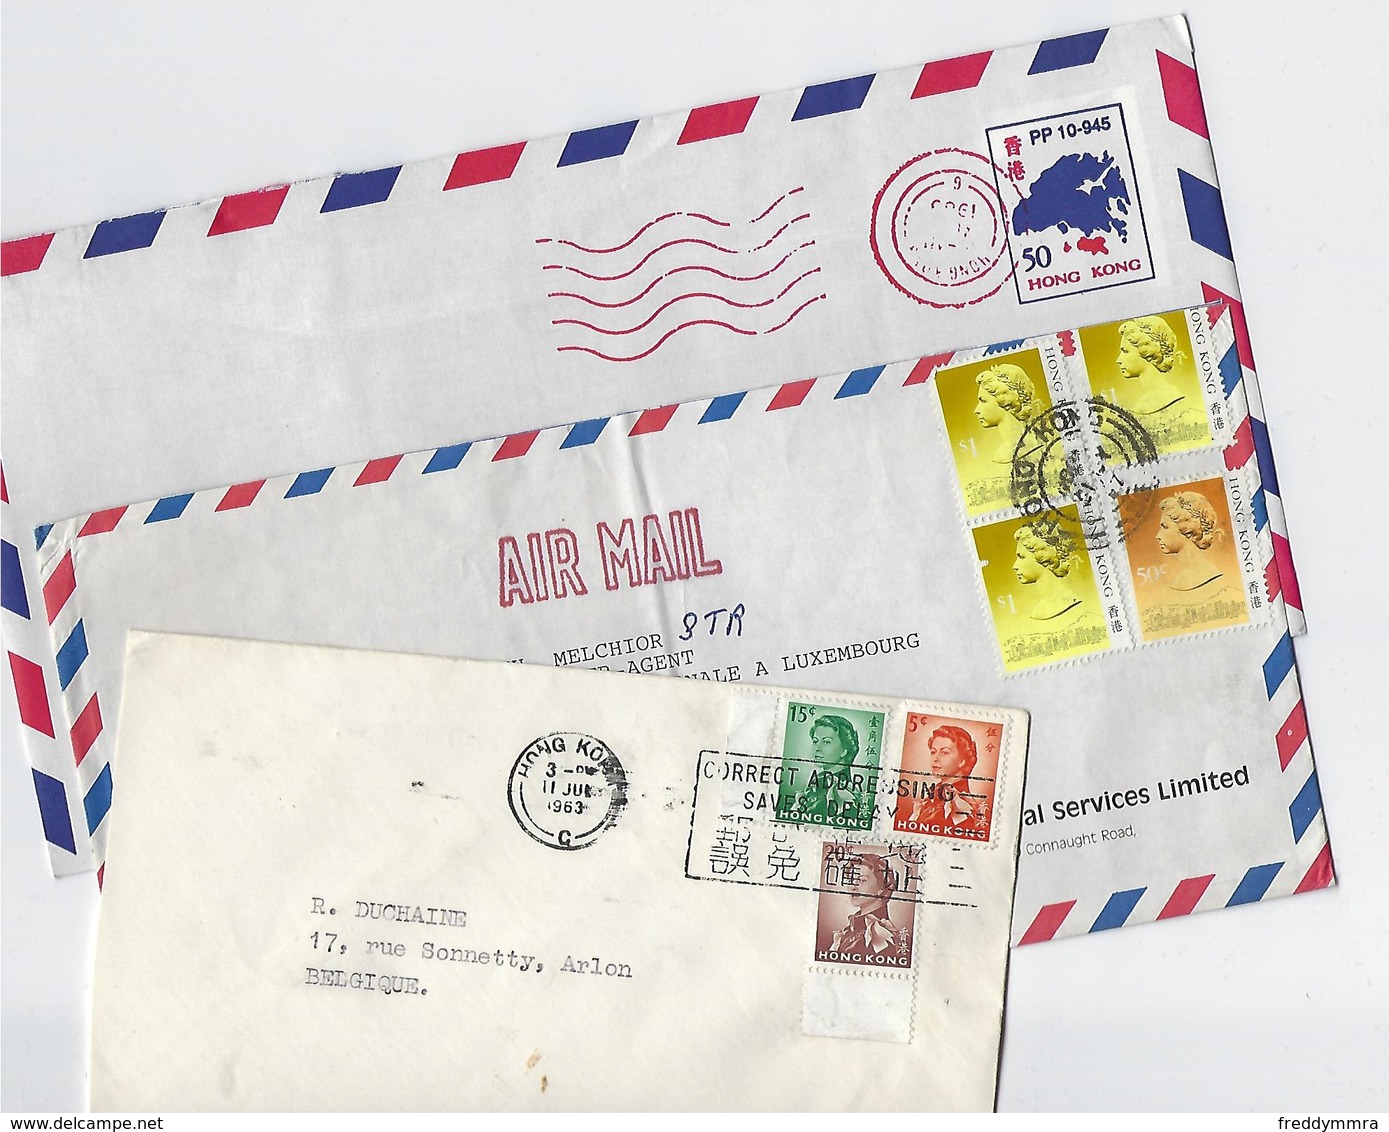 Hong Kong: 3 Lettres Pour La Belgique - Lettres & Documents